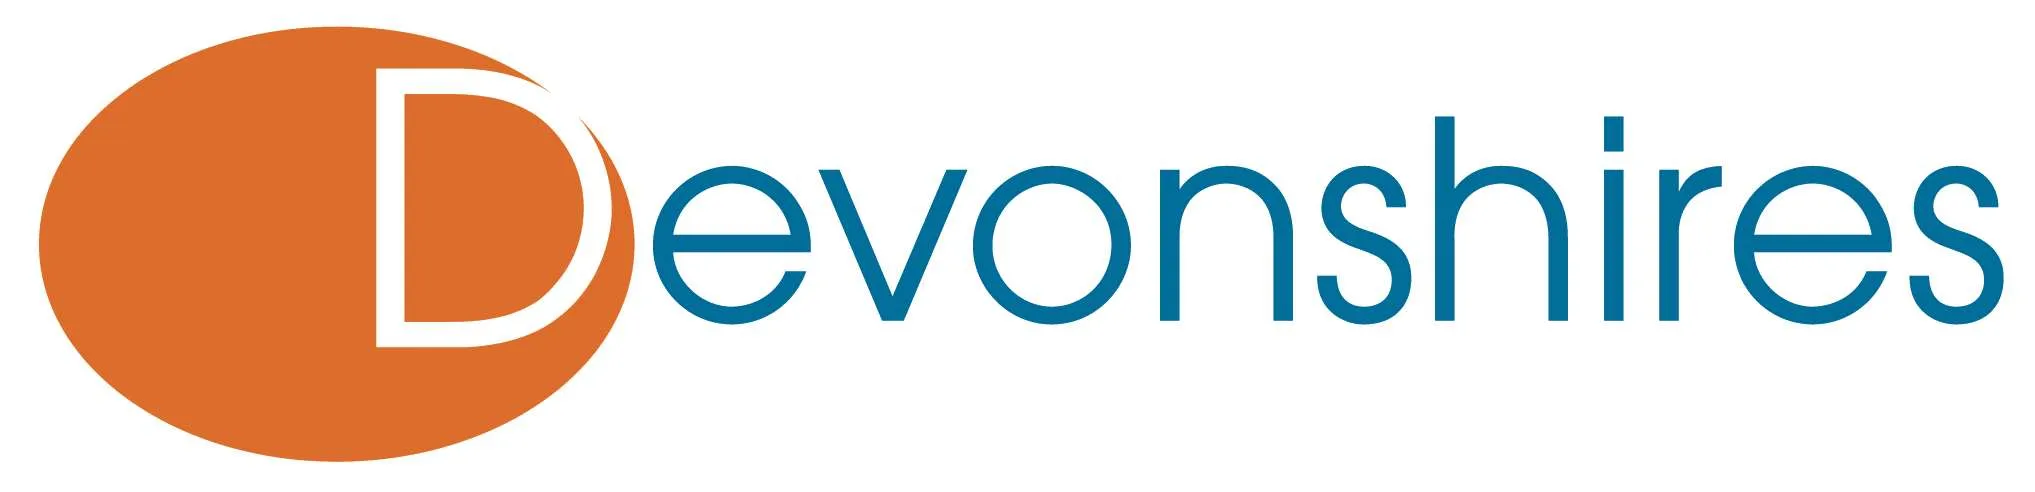 Devonshires-Logo